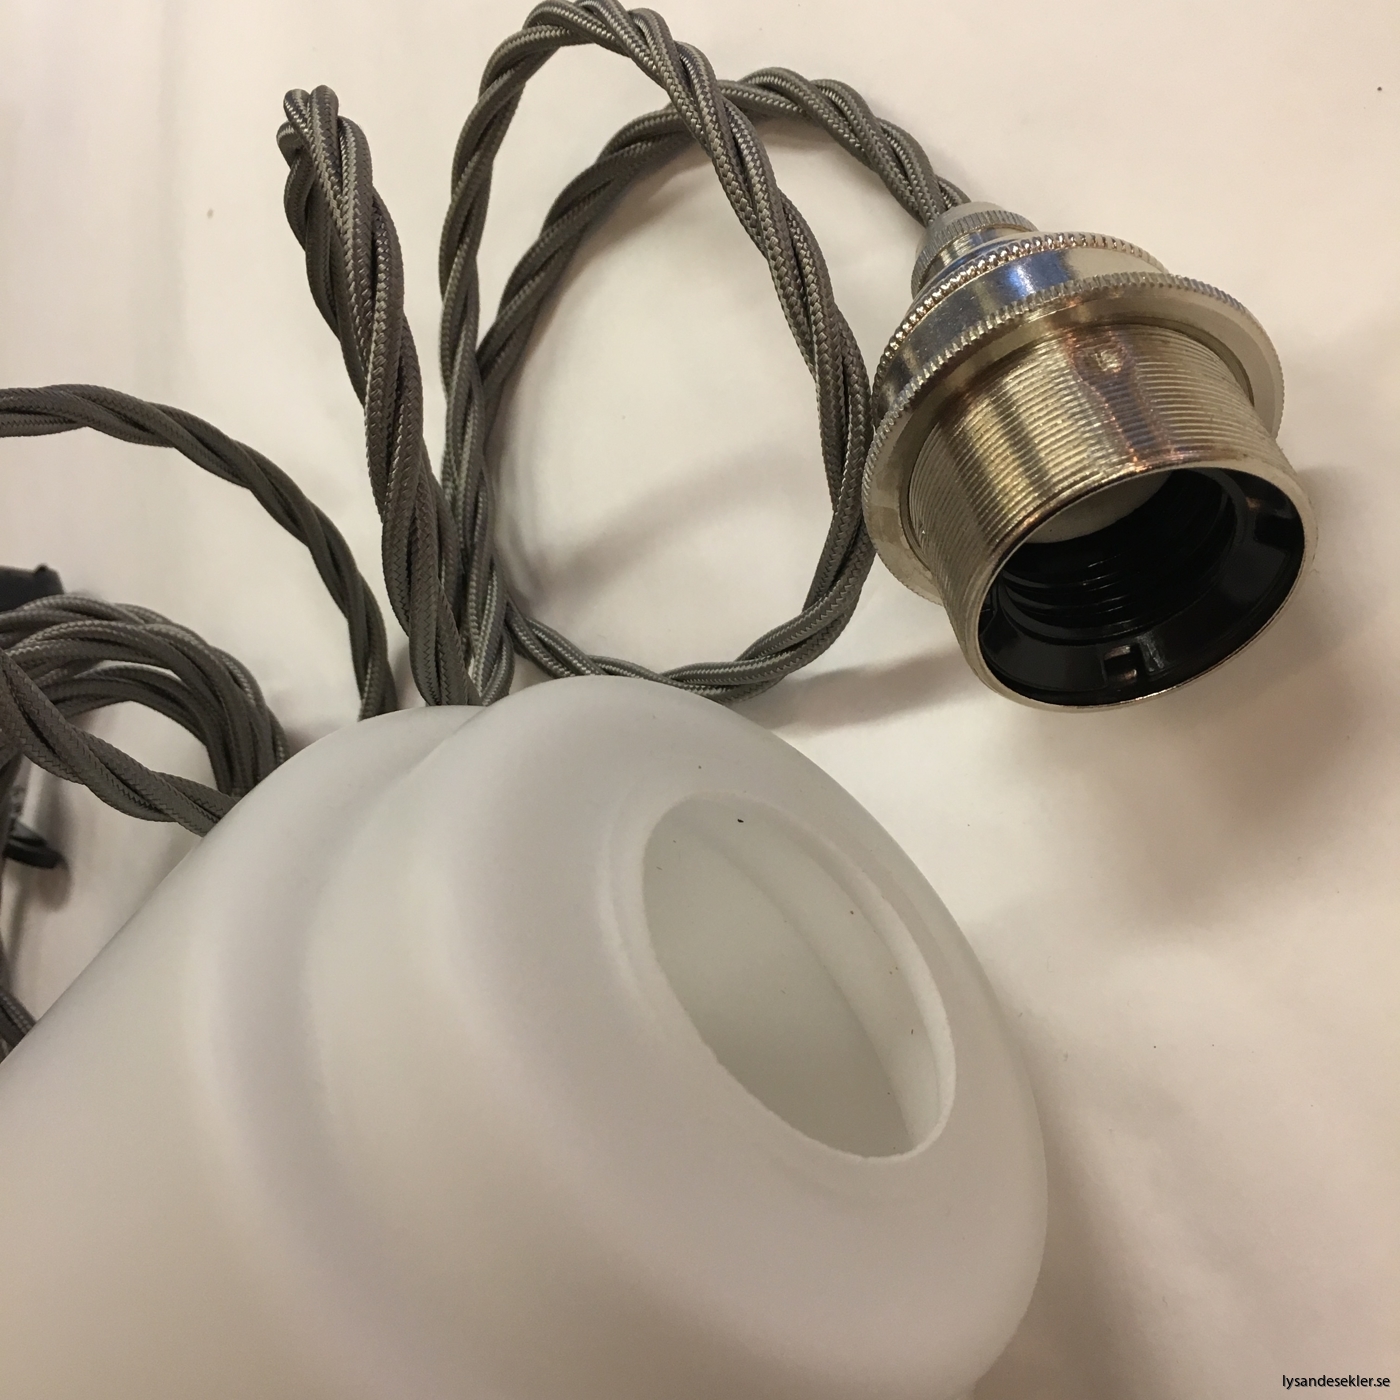 tygsladd textilssladd lampupphäng med 2 ringar utan skruvar för skärm eller glödlampa (25)